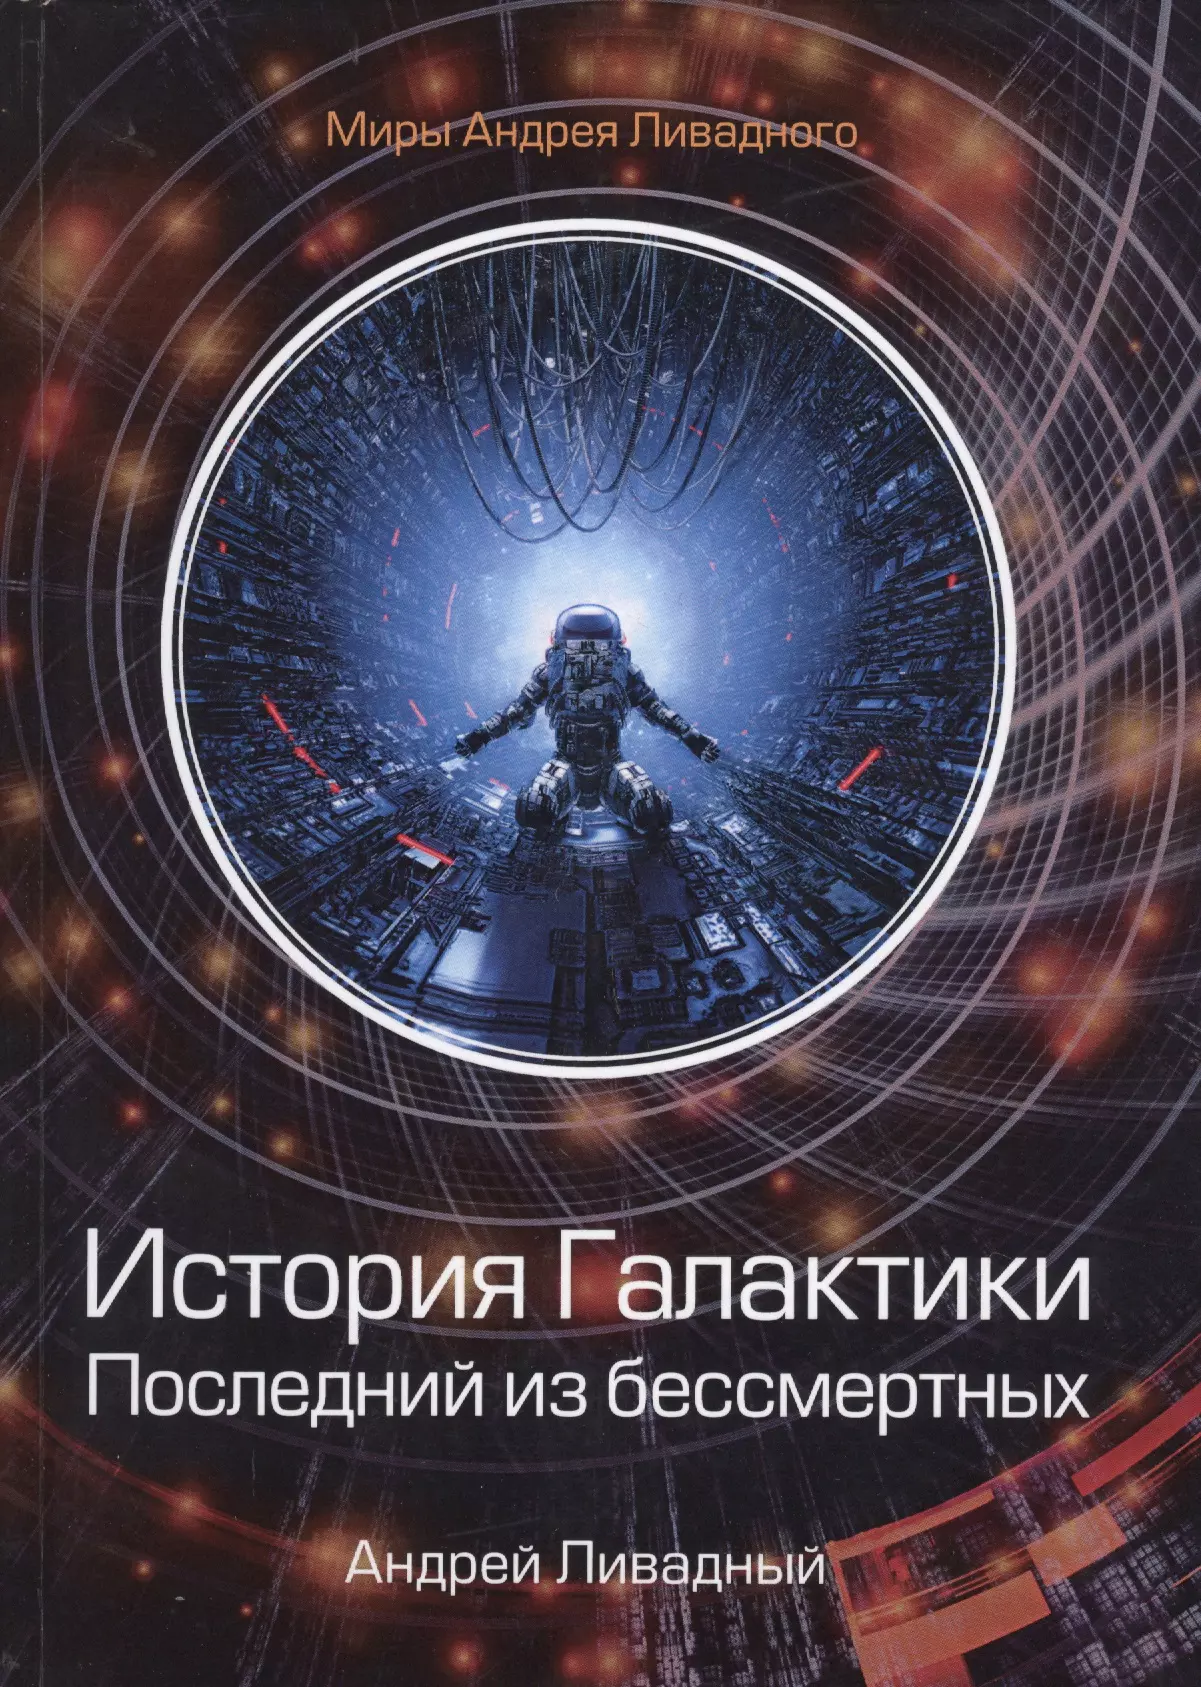 Ливадный Андрей Львович - История Галактики. Последний из бессмертных